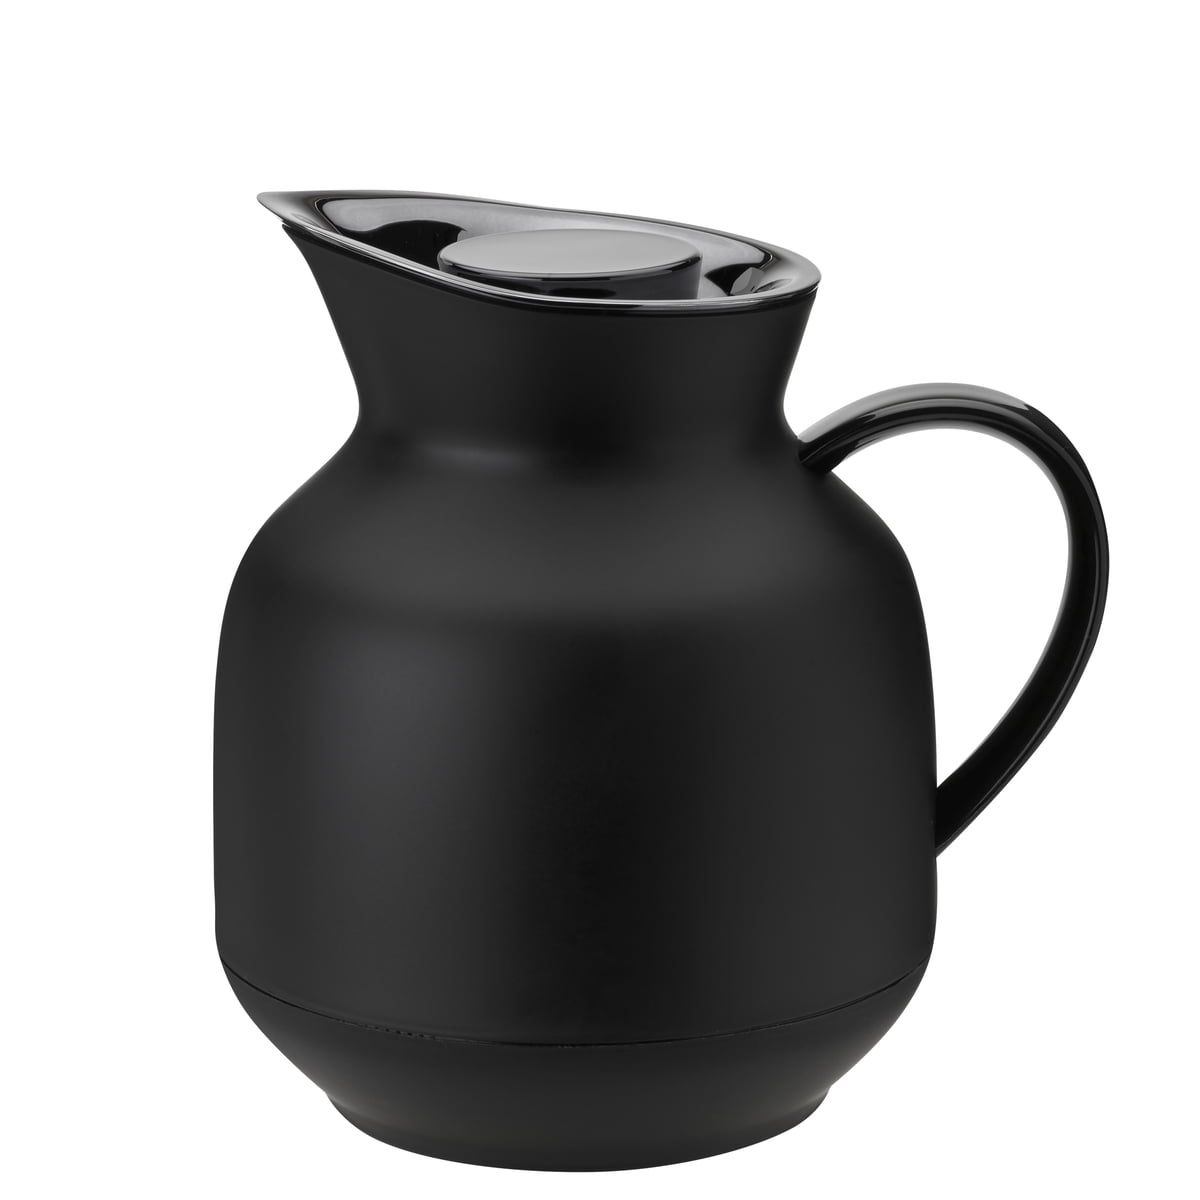 Stelton - Amphora Teeisolierkanne, 1 l, soft black